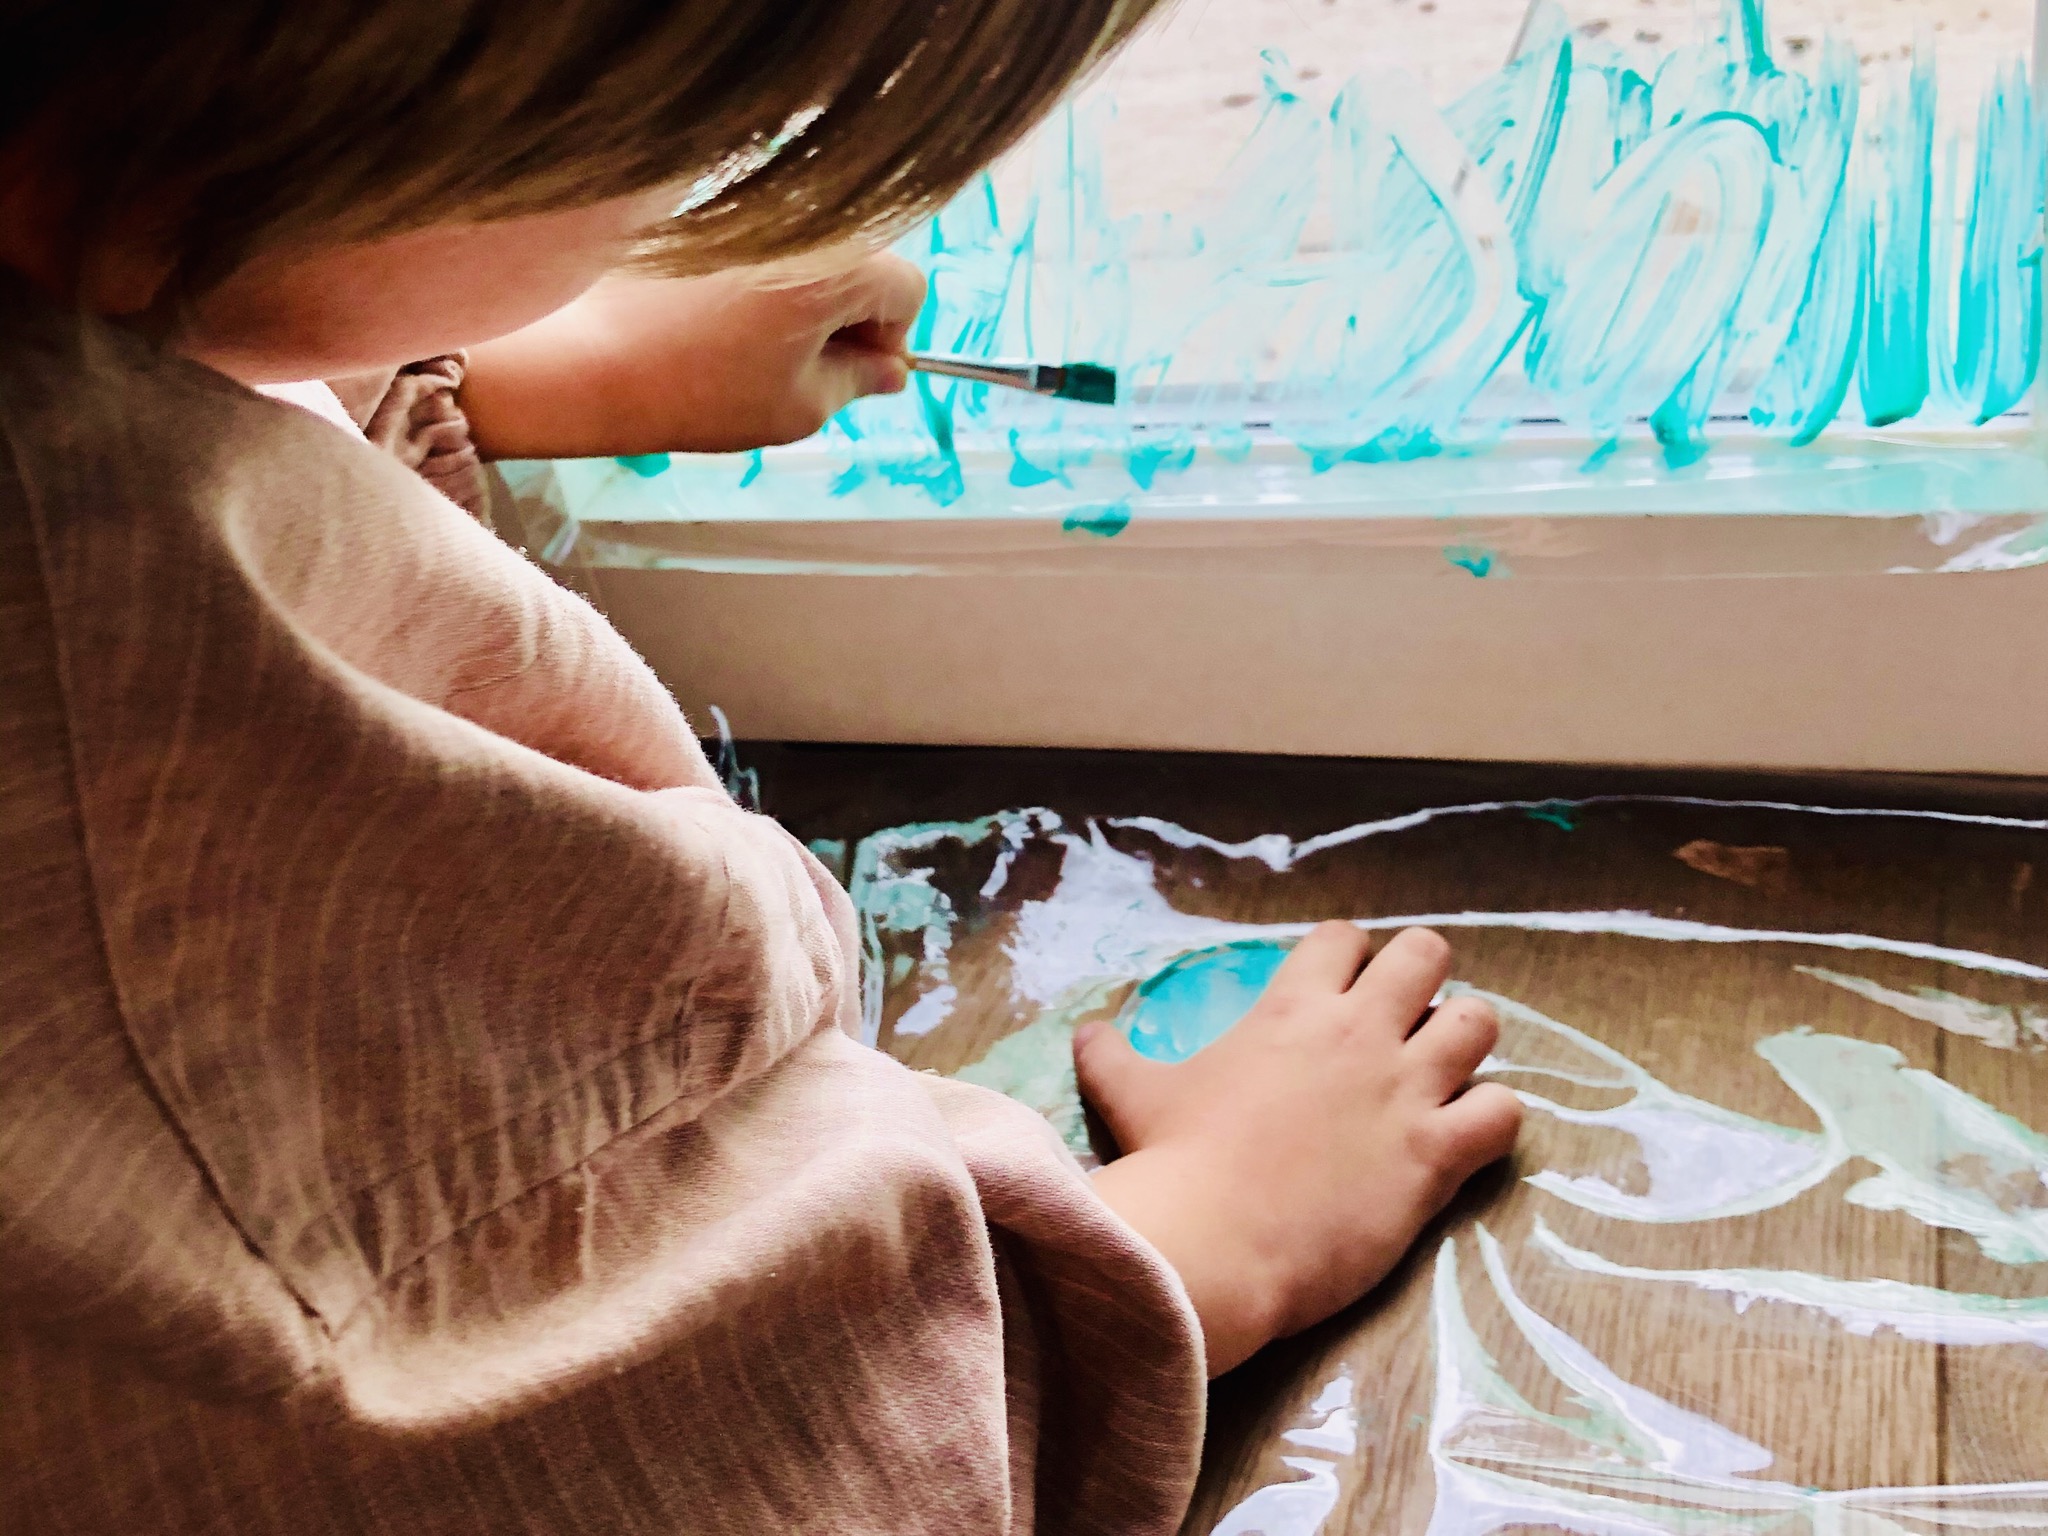 Bild zum Schritt 4 für das Bastel- und DIY-Abenteuer für Kinder: 'Taucht nun dem Pinsel in die grüne Fingerfarbe und malt...'